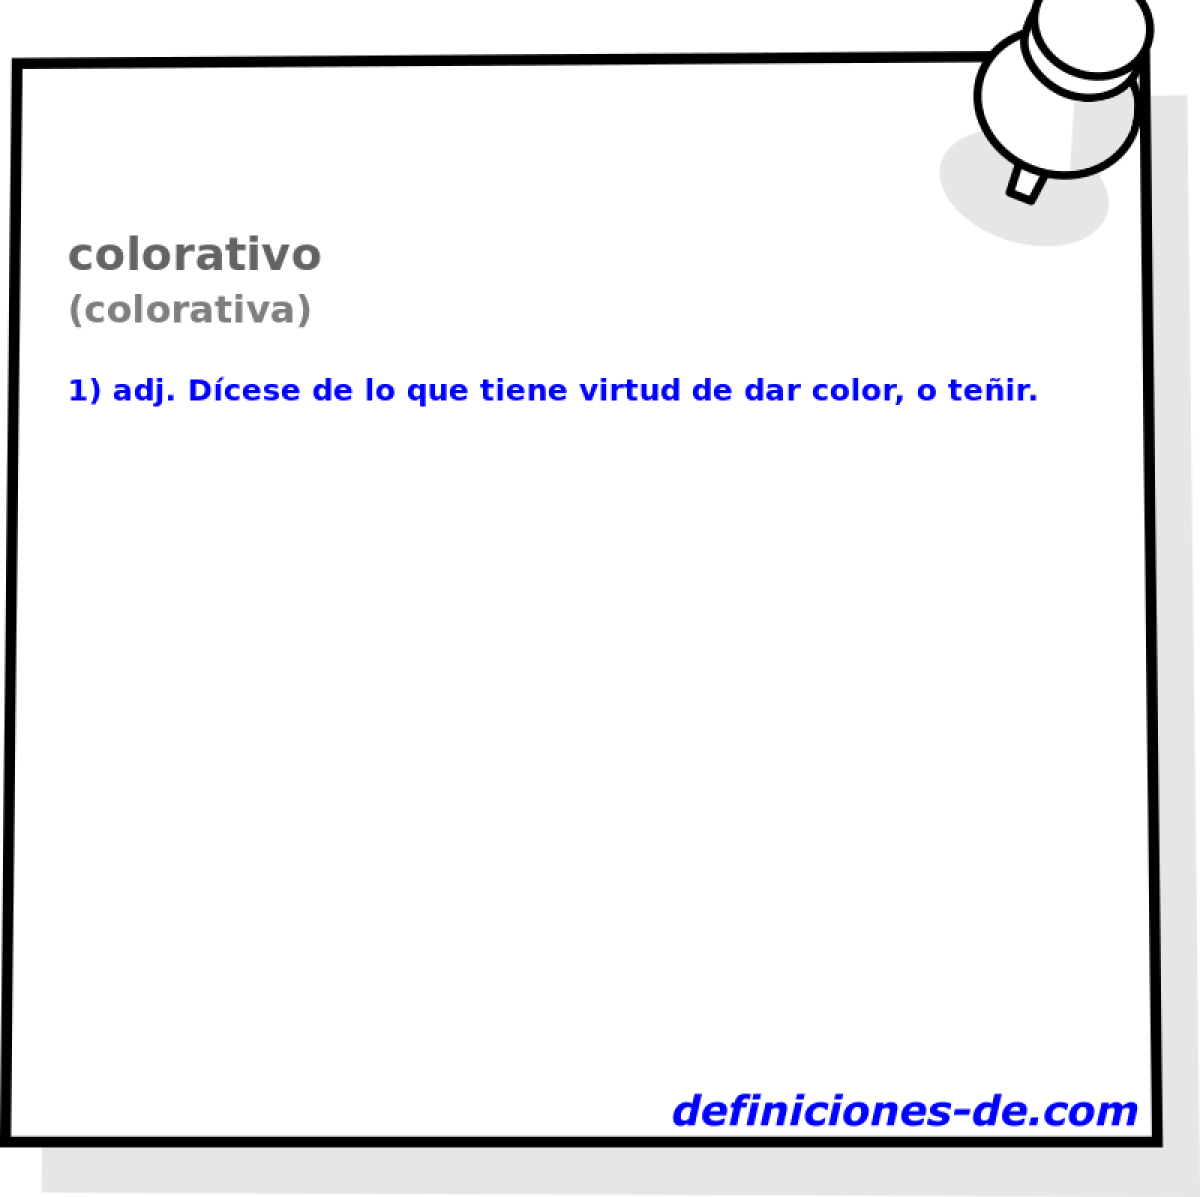 colorativo (colorativa)